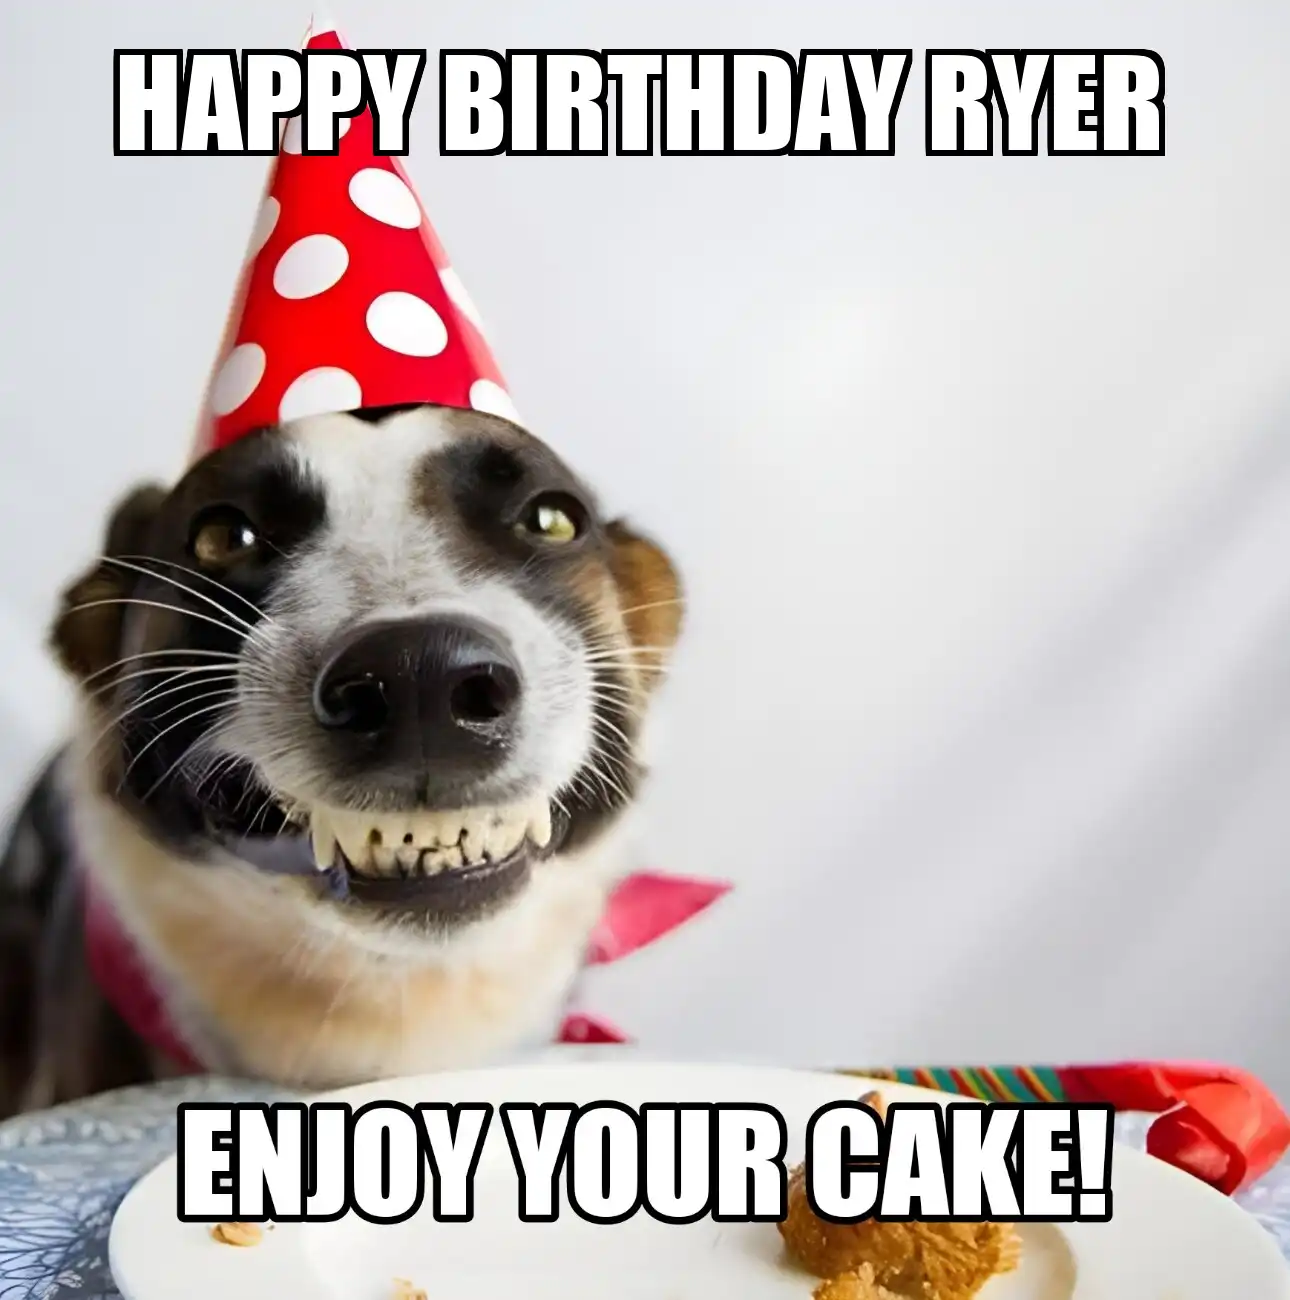 Happy Birthday Ryer Enjoy Your Cake Dog Meme